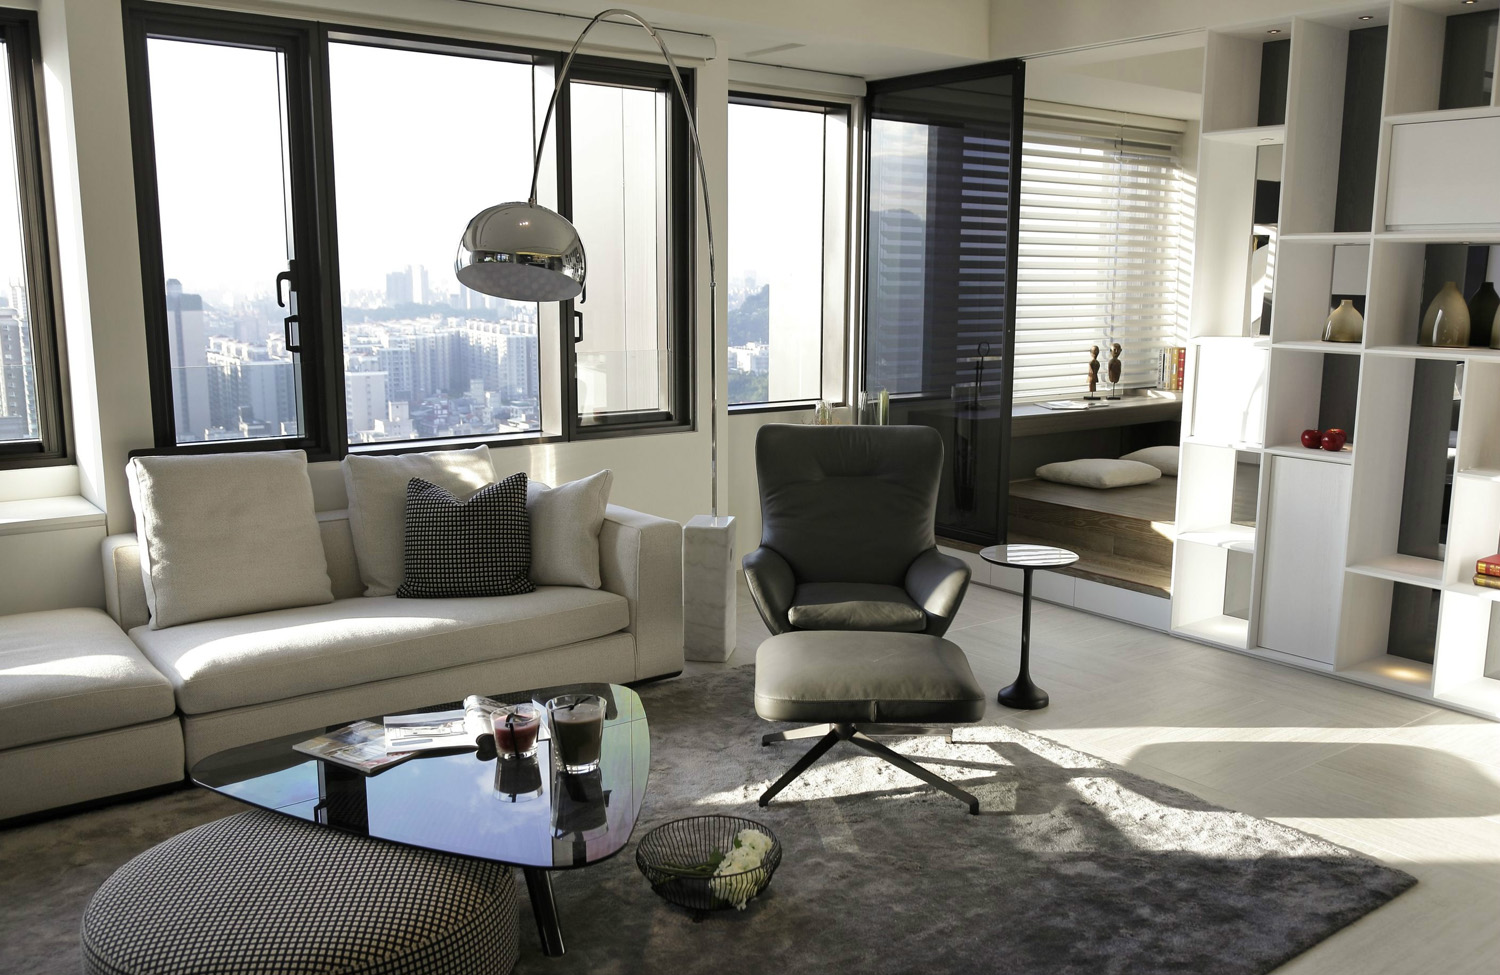 统一的黑白灰色调，白色的沙发，深色的家具，以及吊顶流畅的线条，都是设计师对于作品的加分之处，使得整个作品更加沉稳大气。